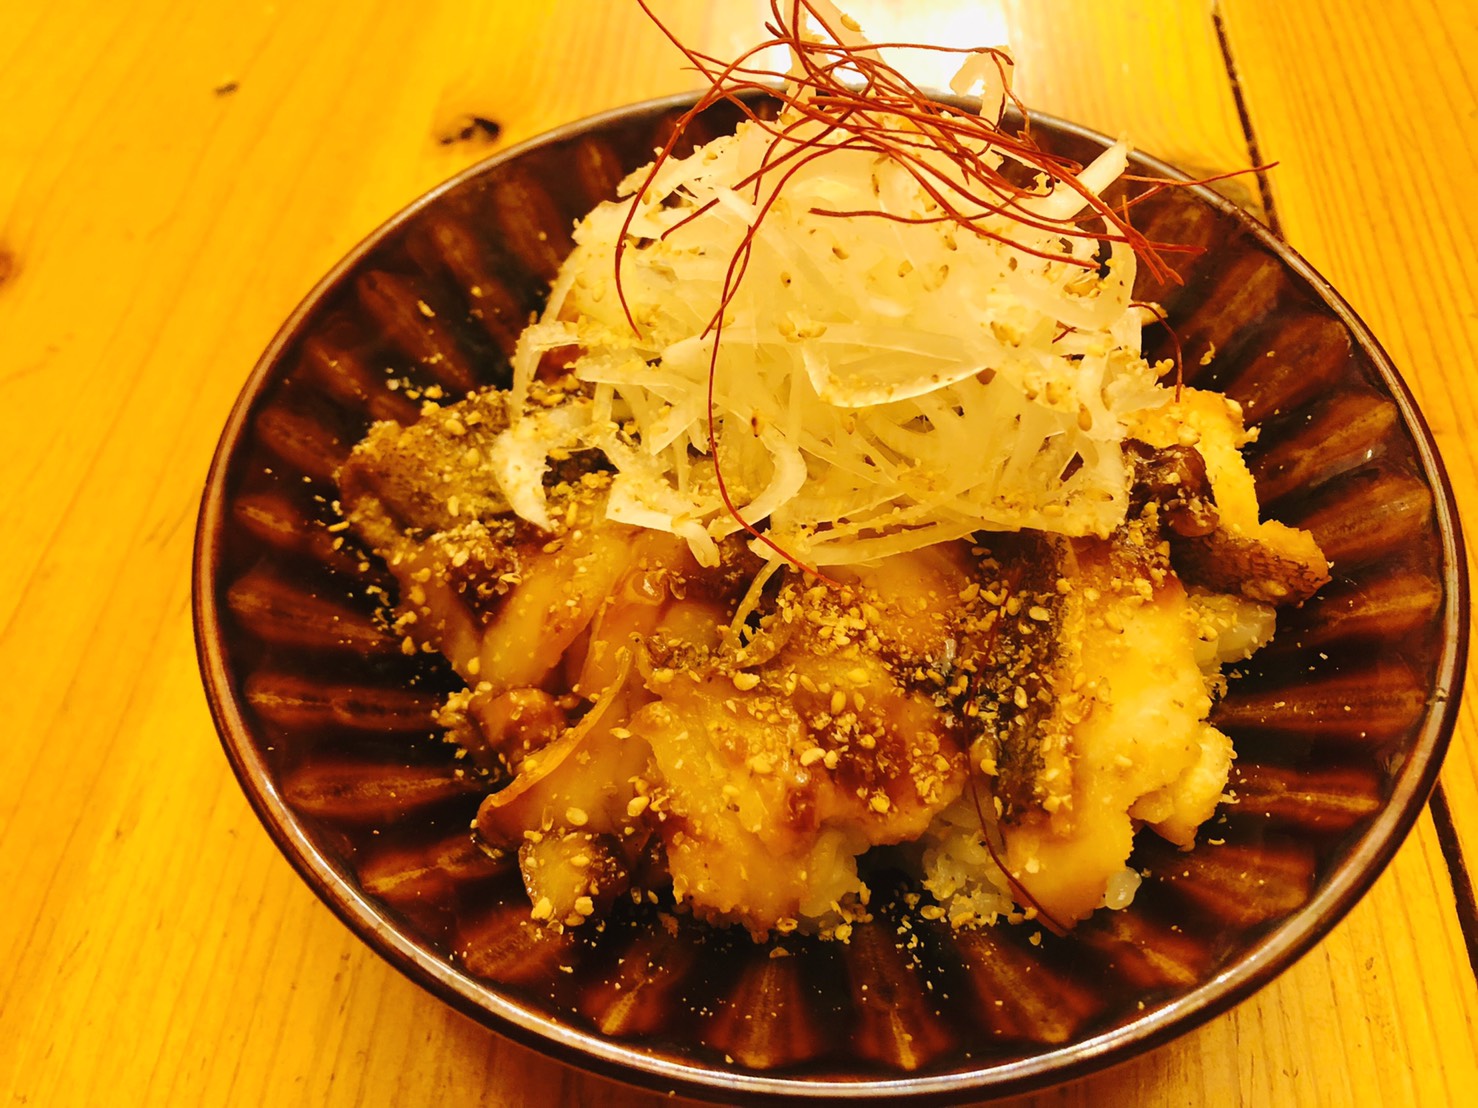 カンパチのカマ塩焼き 海の恵み 食の底力 Japan 公式レシピサイト